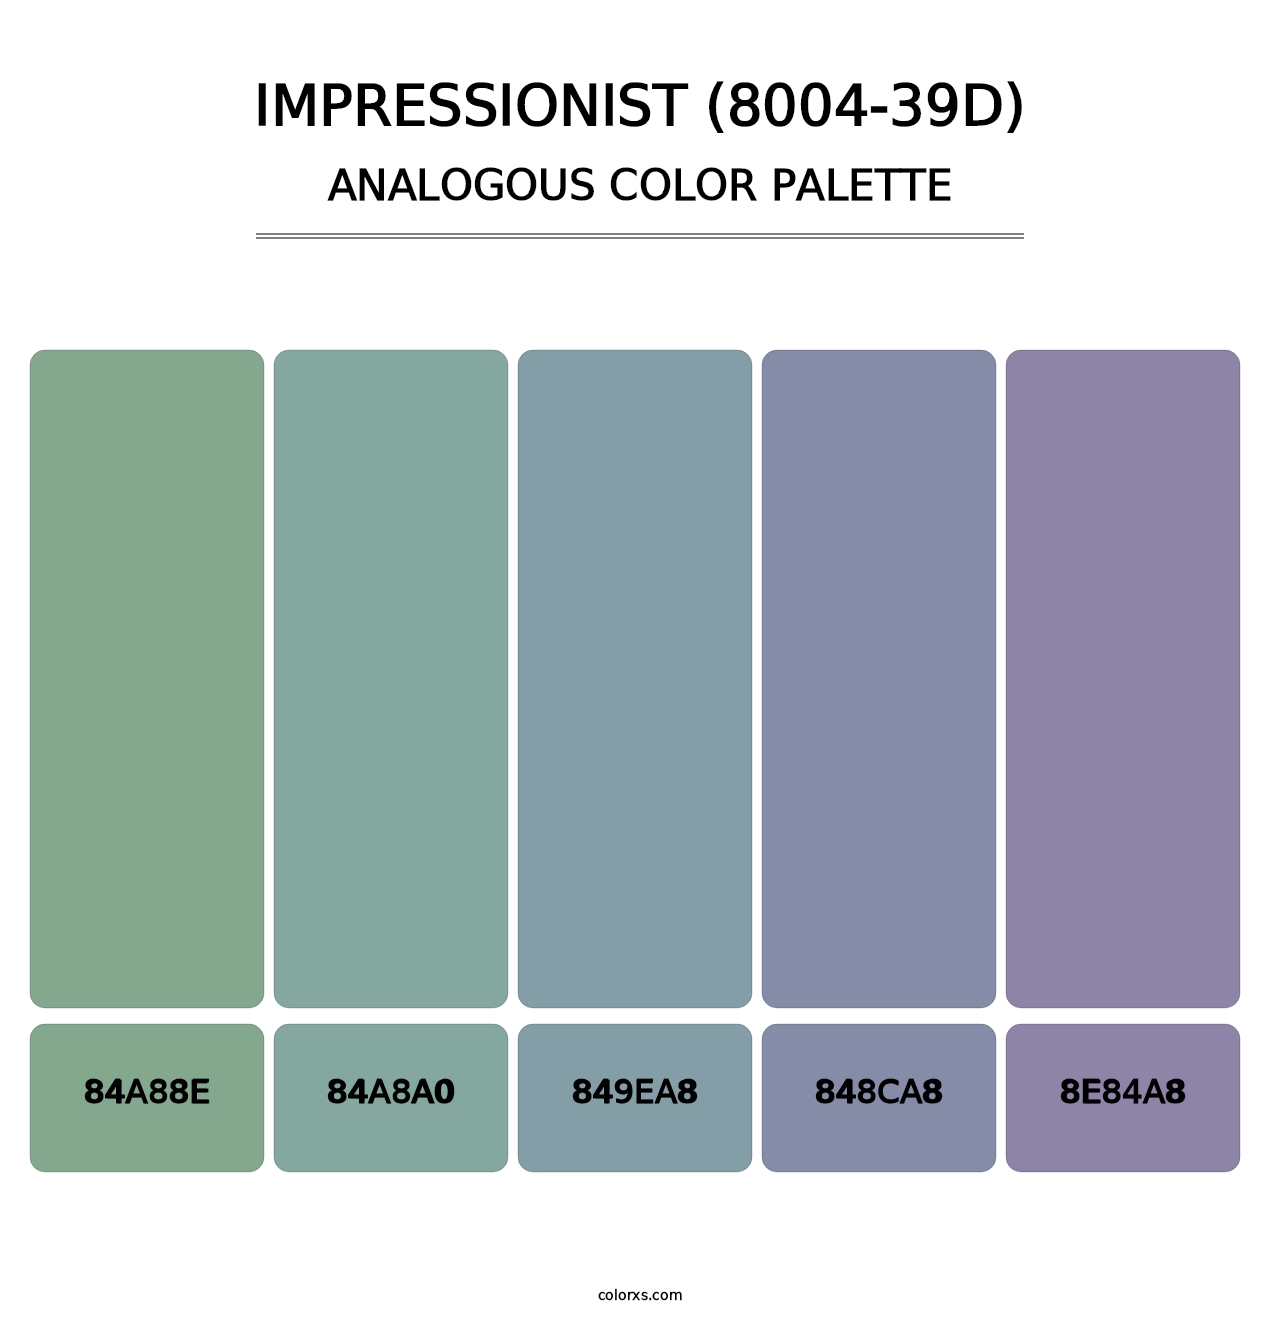 Impressionist (8004-39D) - Analogous Color Palette